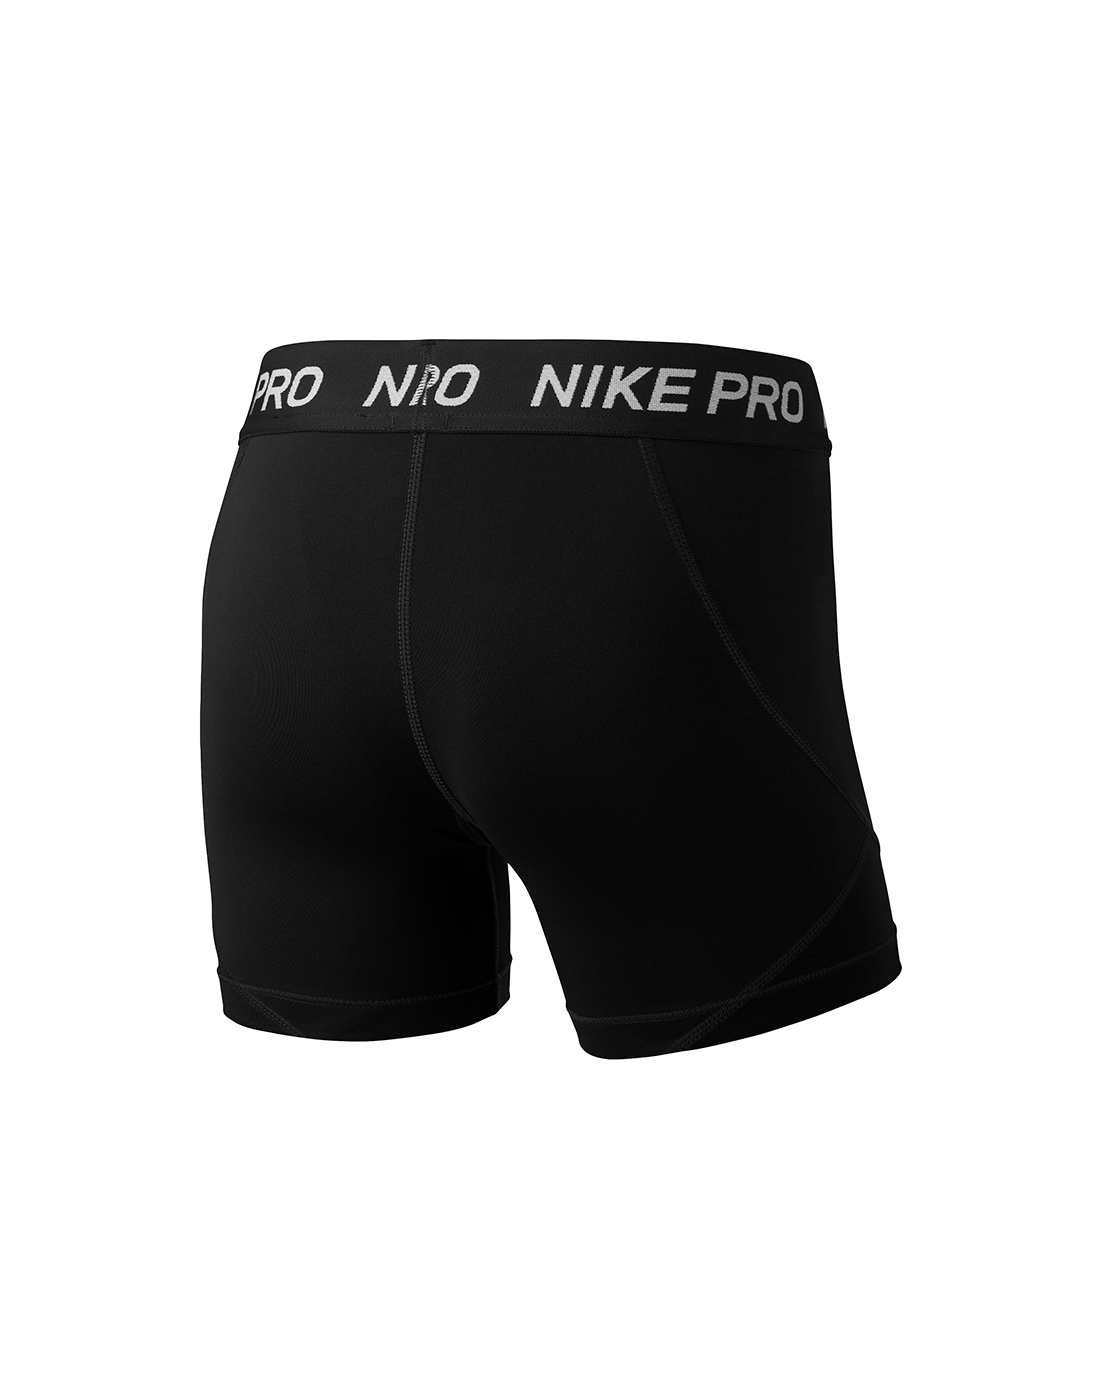 Nike Older Girls Pro Shorts - Black | Life Style Sports IE